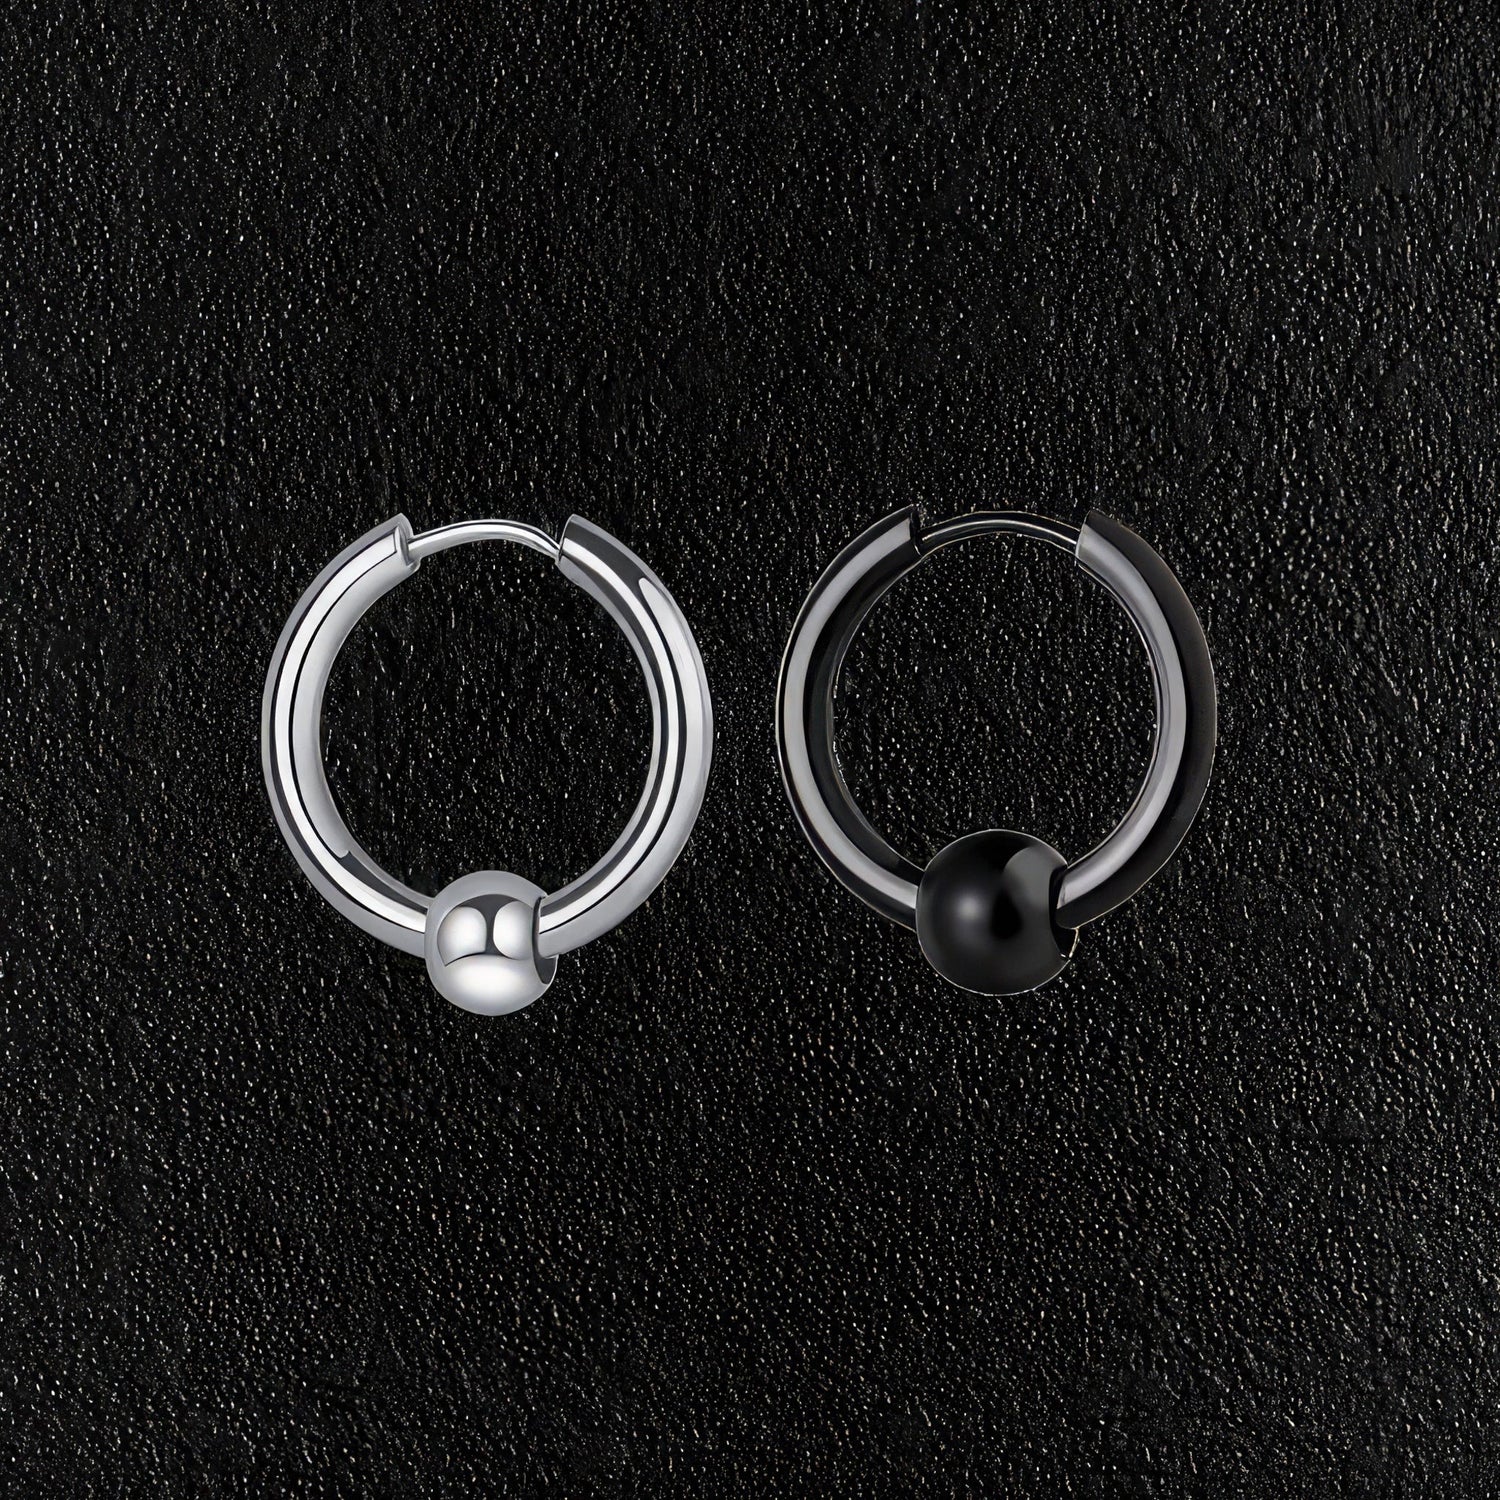 Silver & Black  Stainless Steel Hoop & Ball Earrings